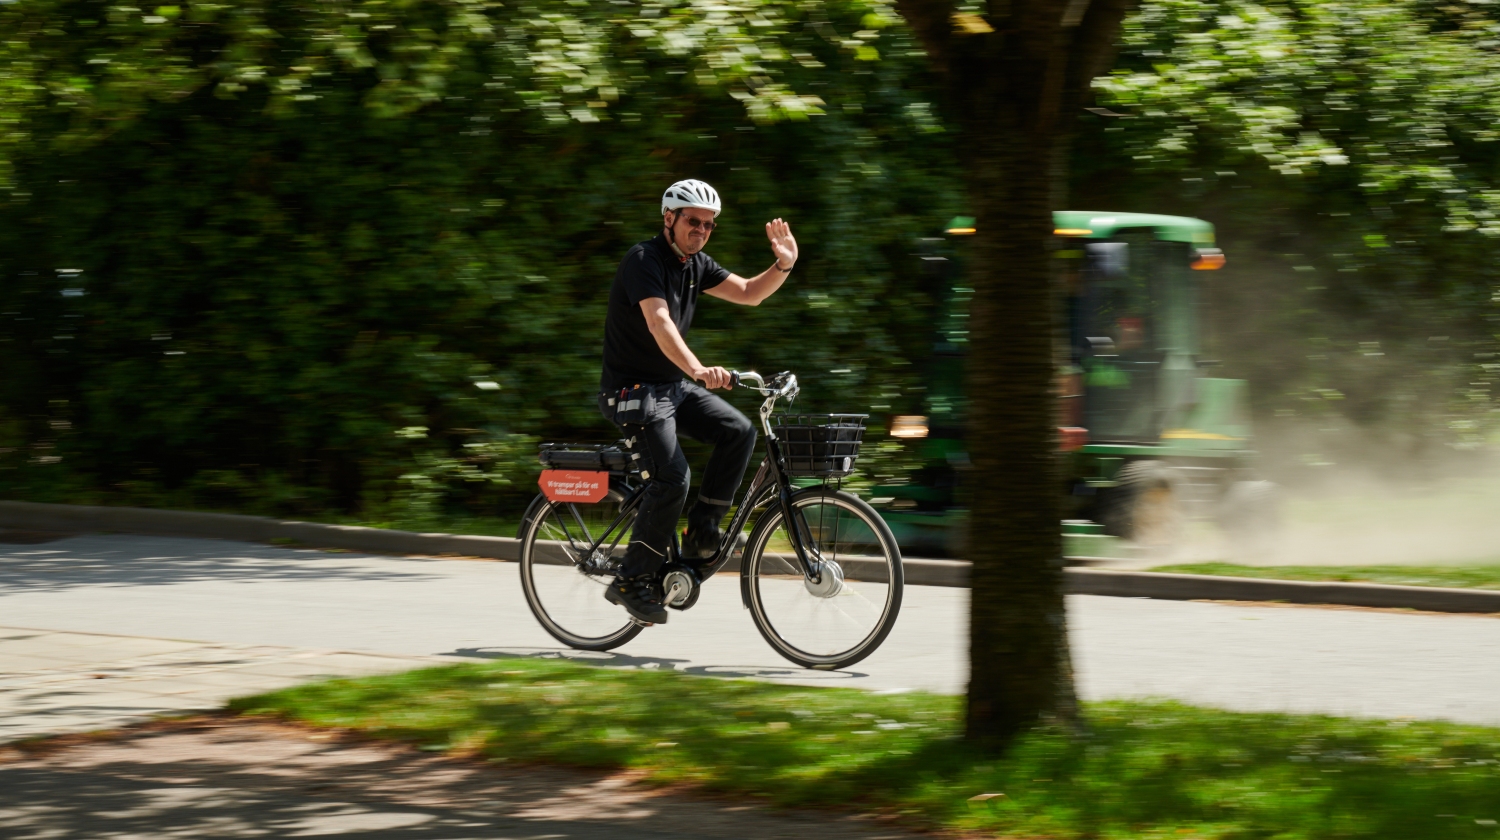 Medarbetare som cyklar på en väg kantad av grönska och vinkar till kameran